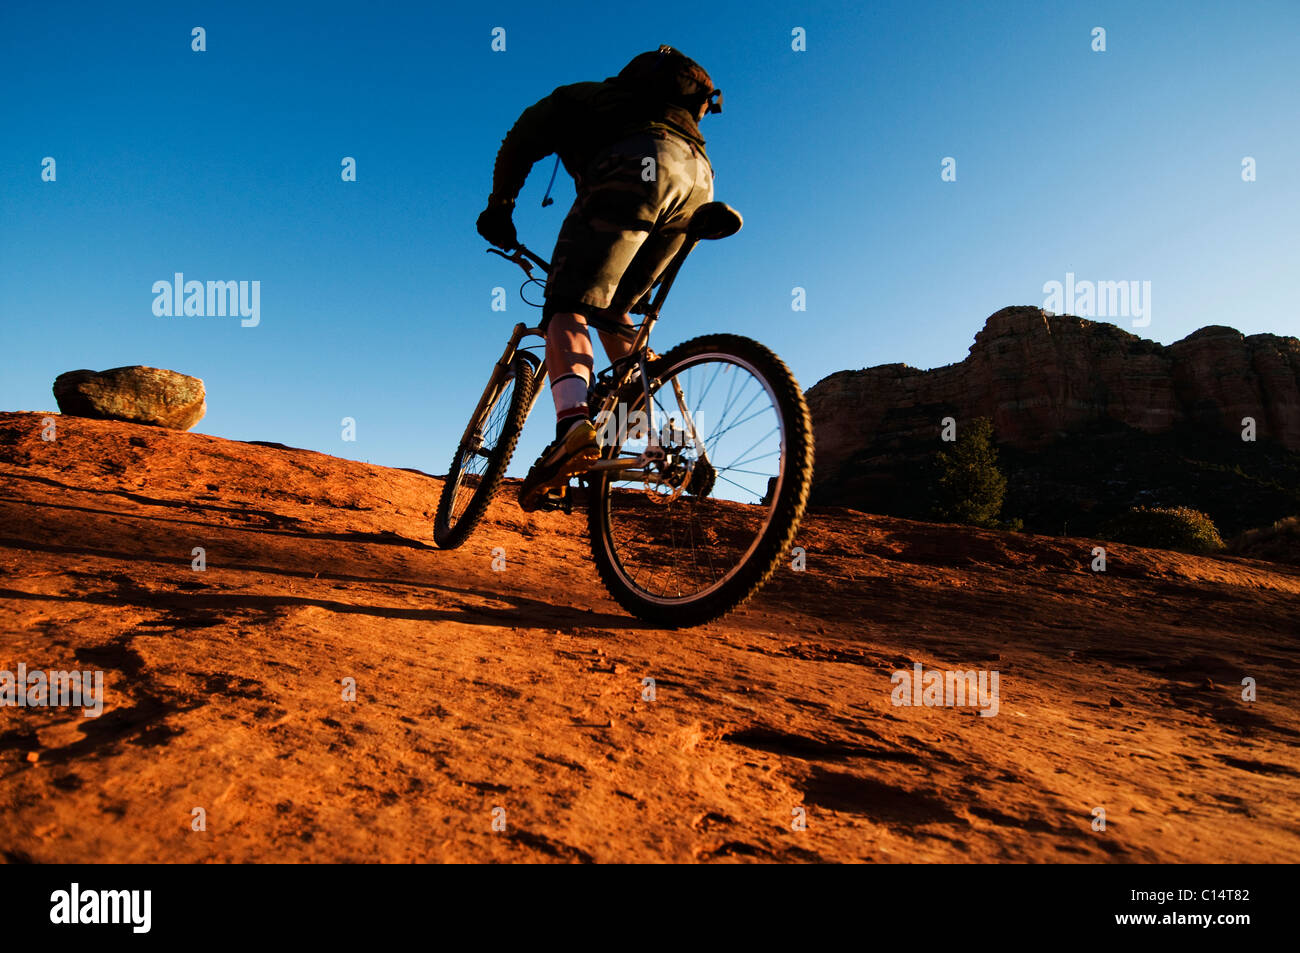 Un homme d'âge moyen chevauche son vtt à travers le pays des roches rouges de Sedona, AZ. Banque D'Images